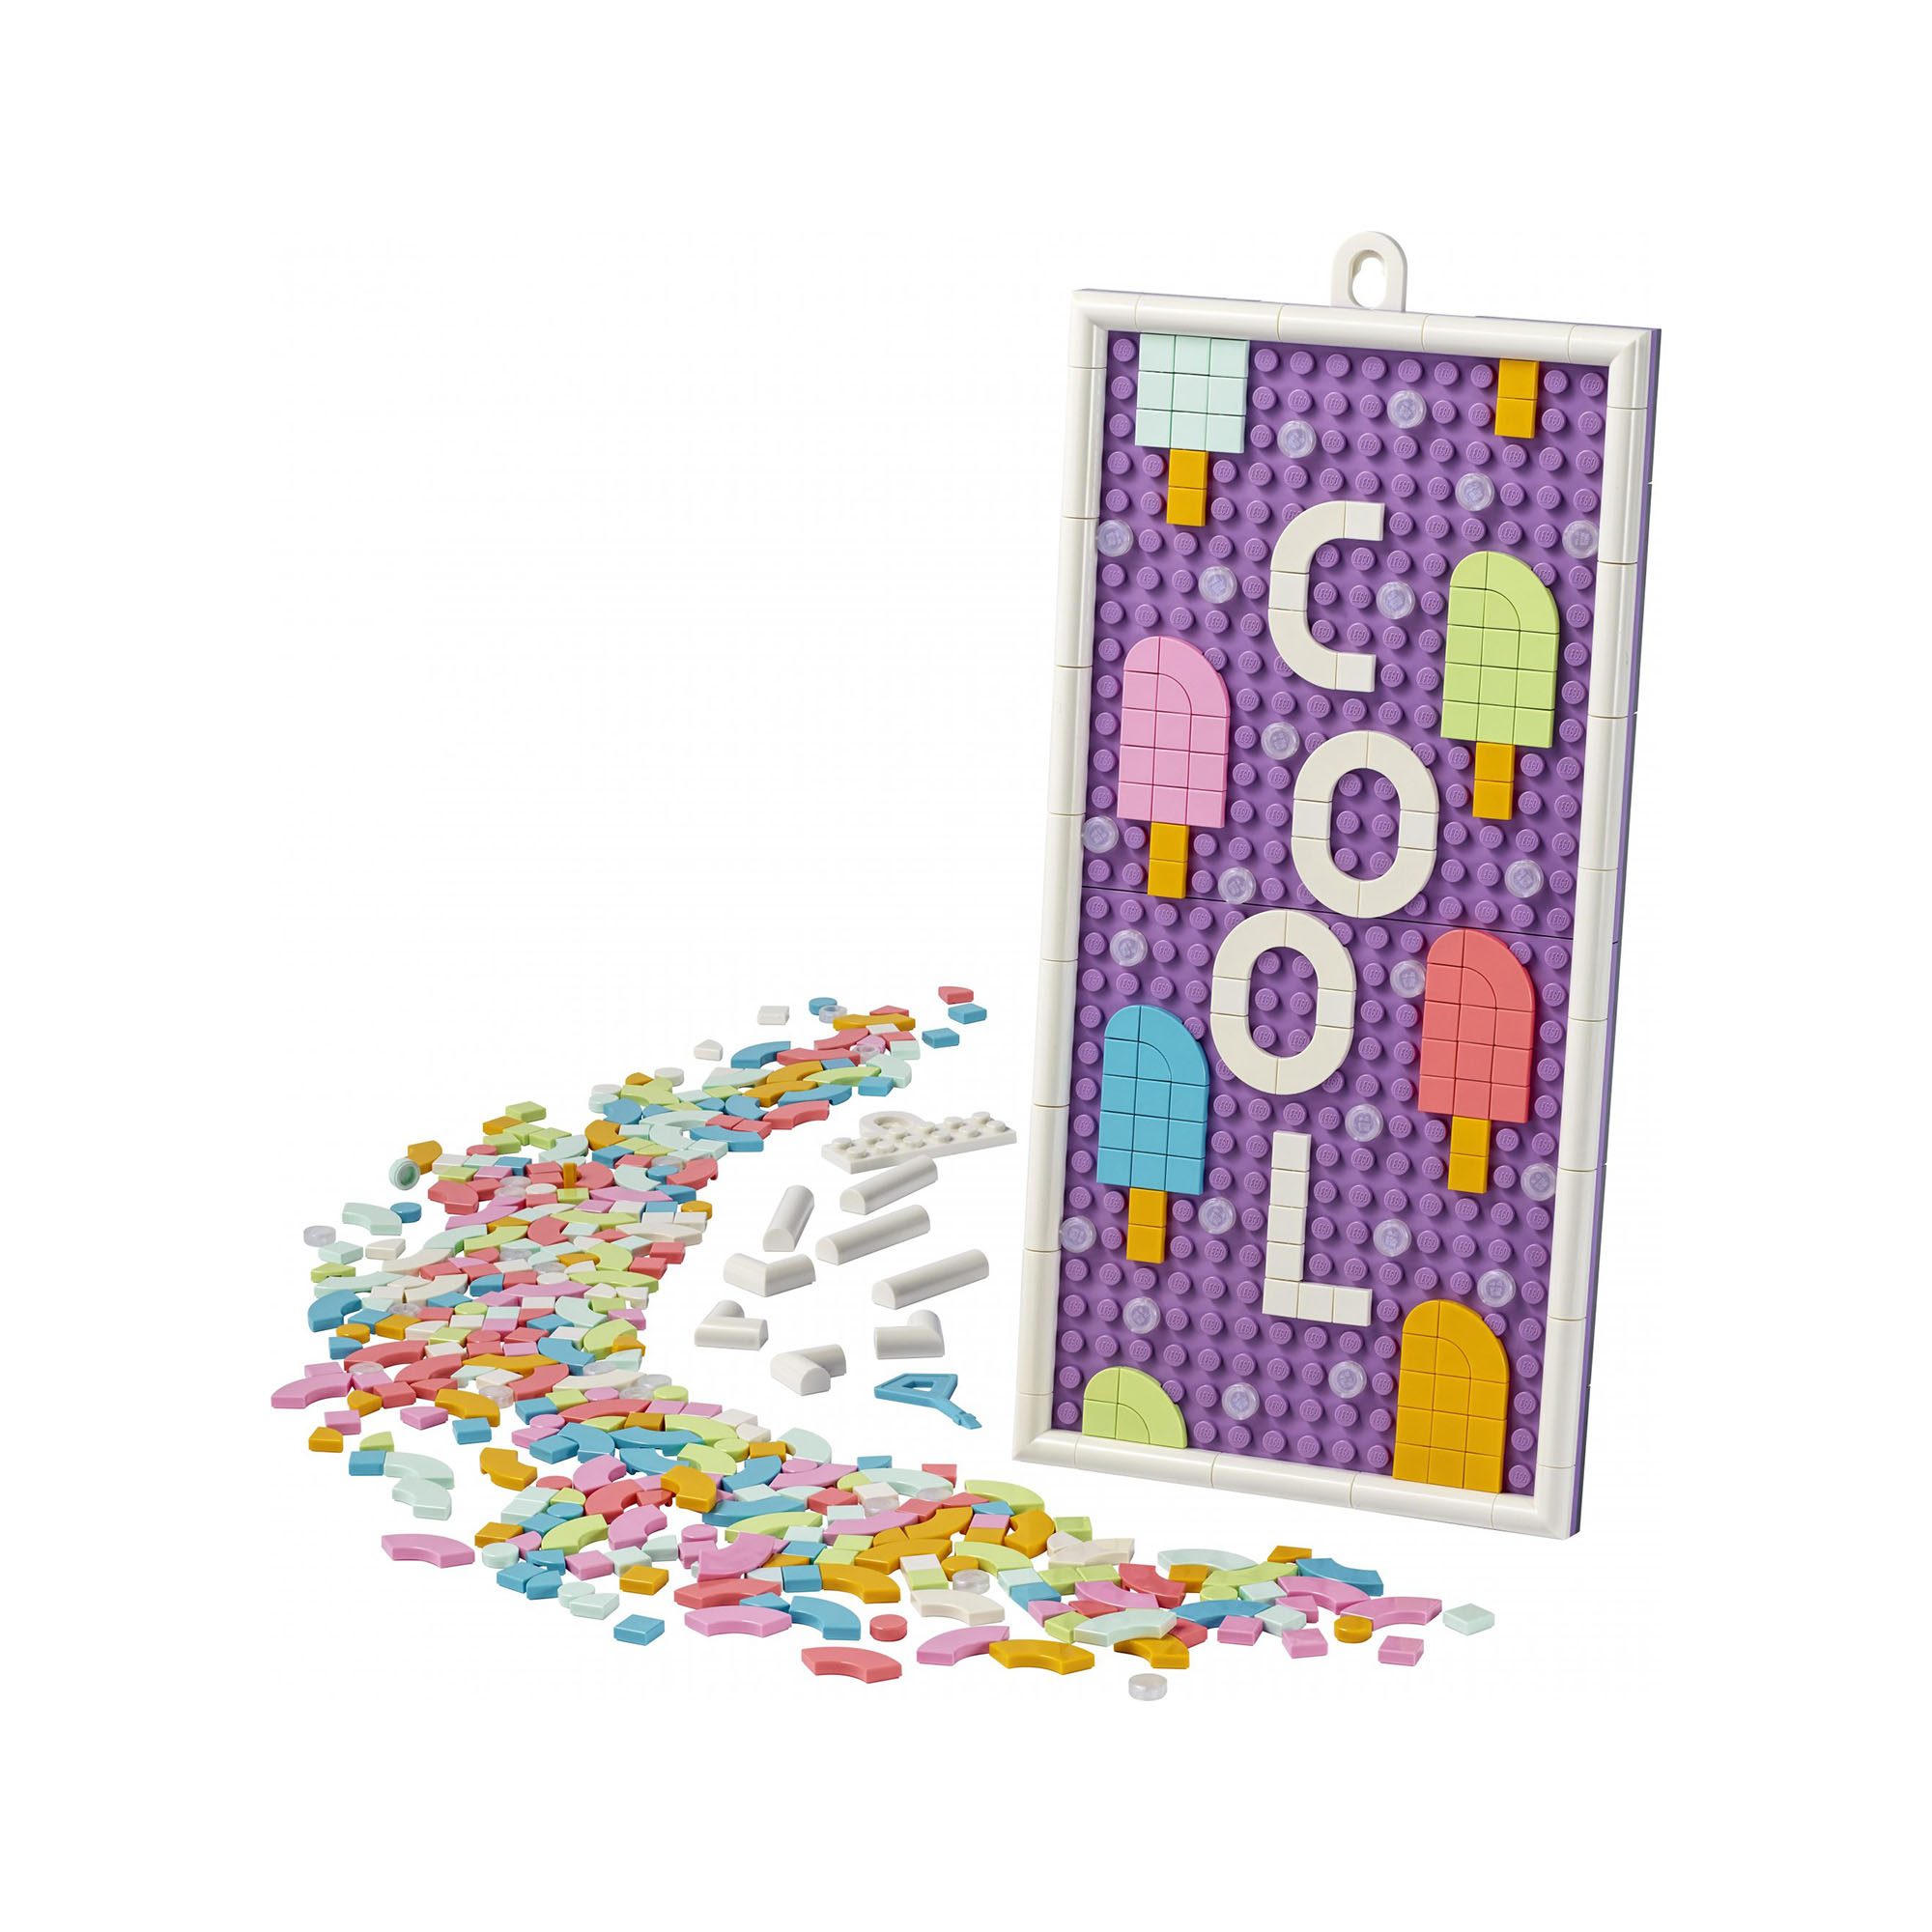 LEGO DOTS Bacheca Messaggi, Lavagna Personalizzabile per Bambini, Accessori per  41951, , large